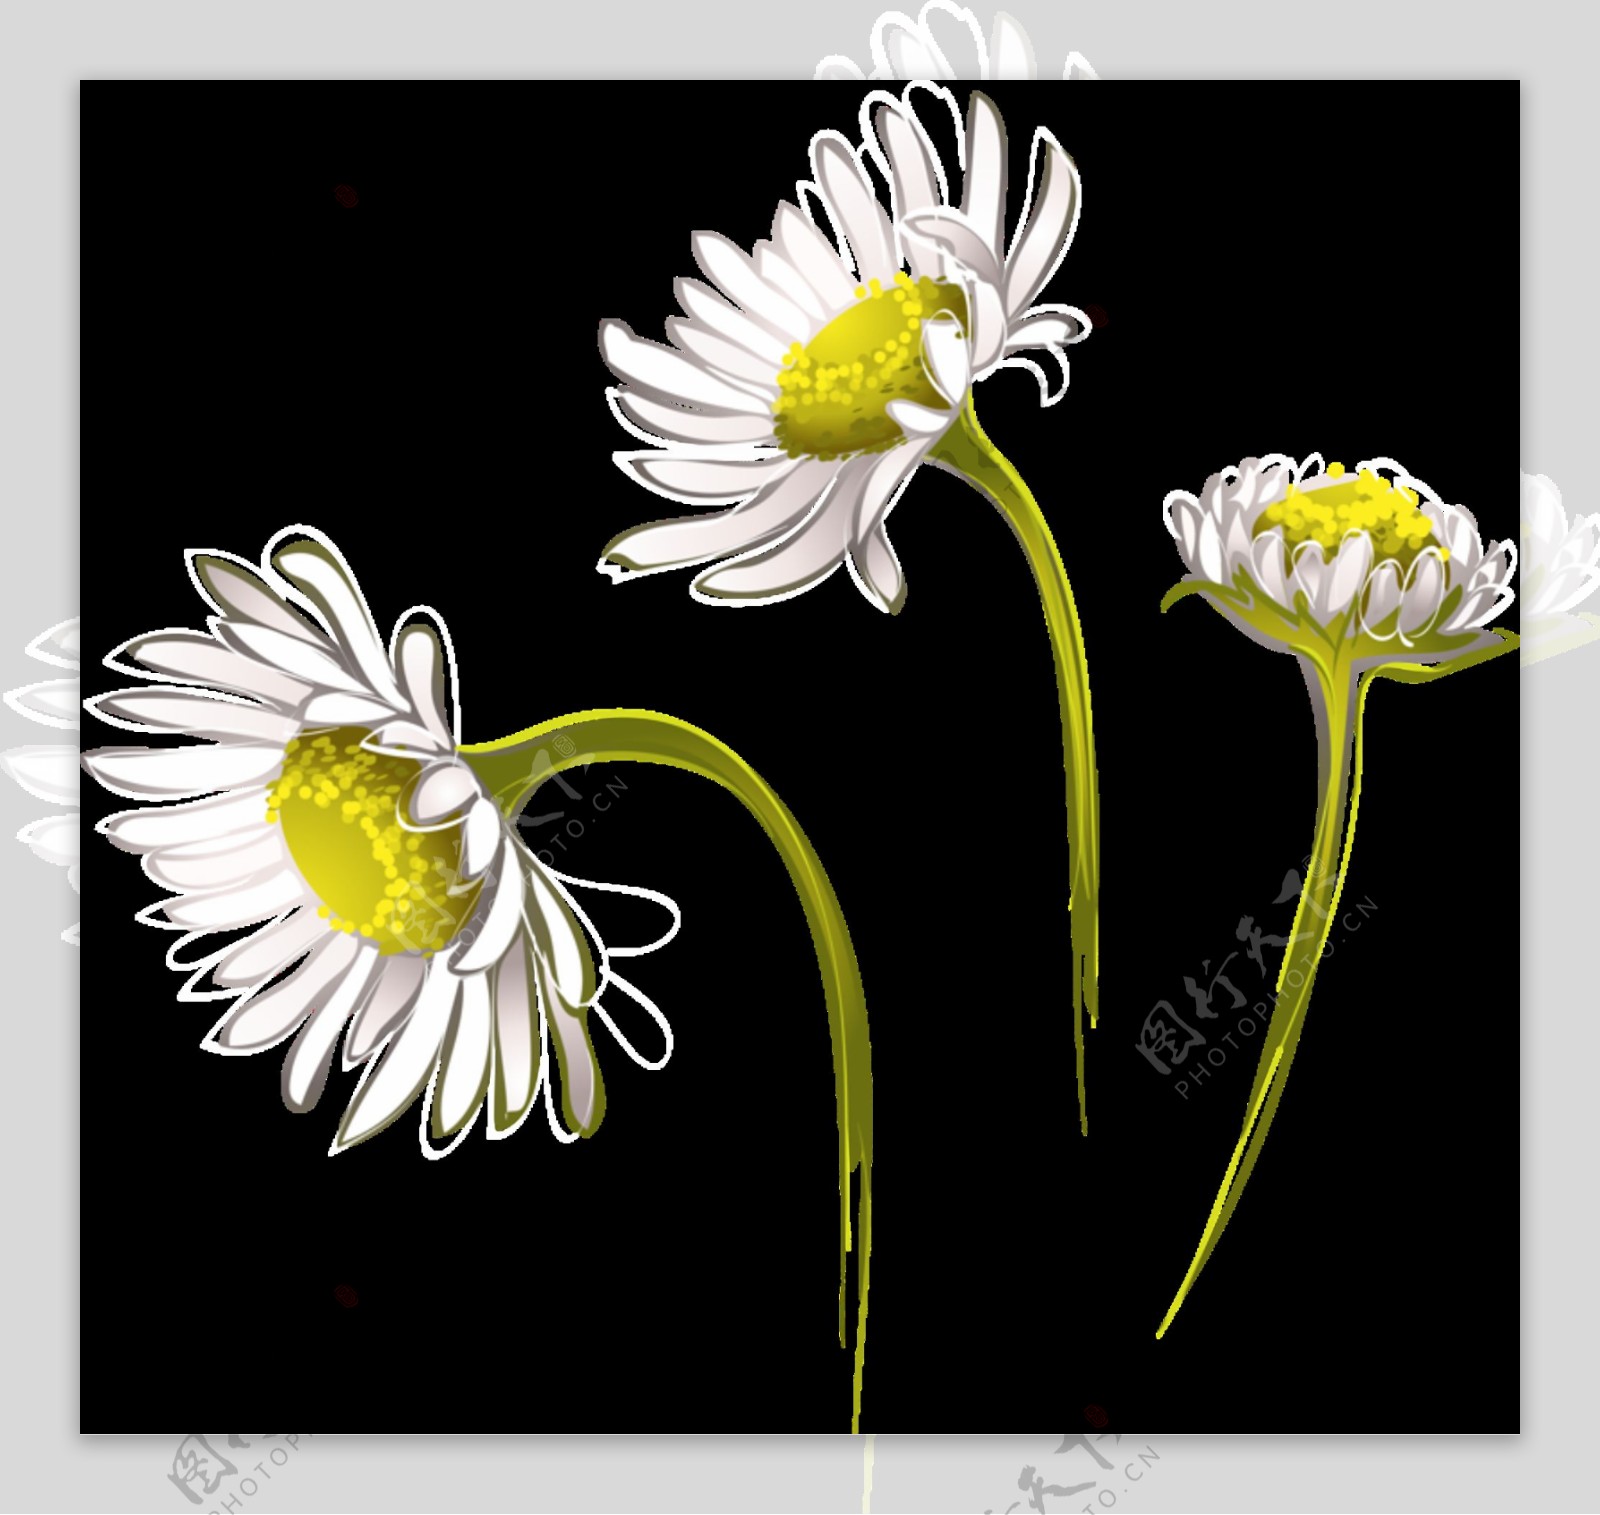 清新淡白色手绘菊花装饰元素